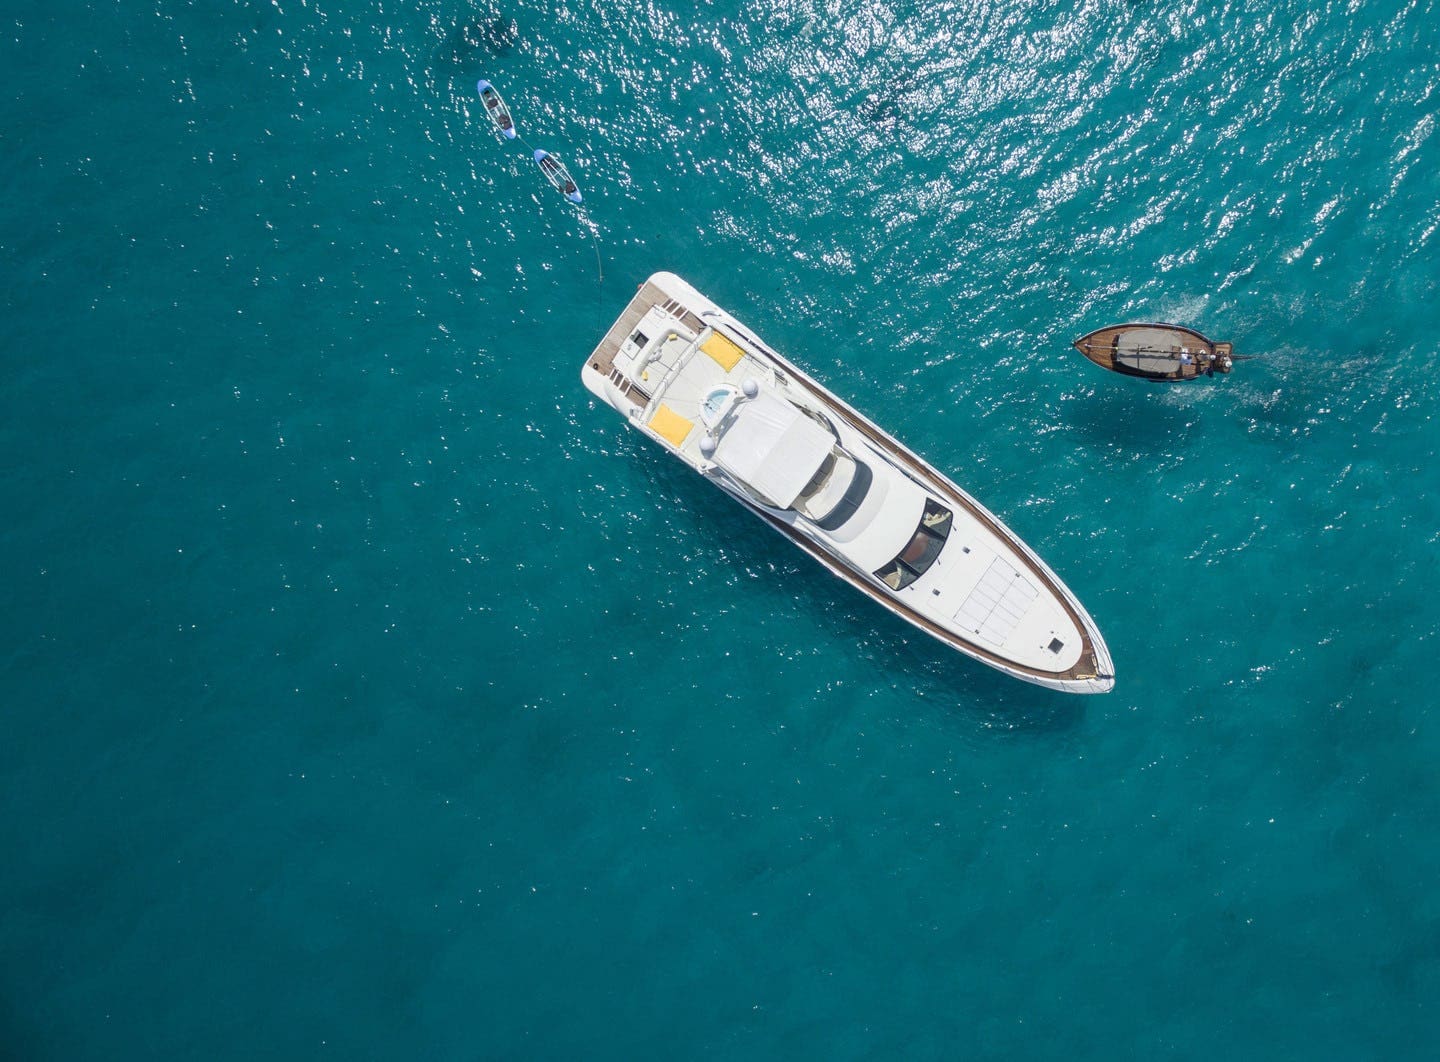 Barco Maldivas